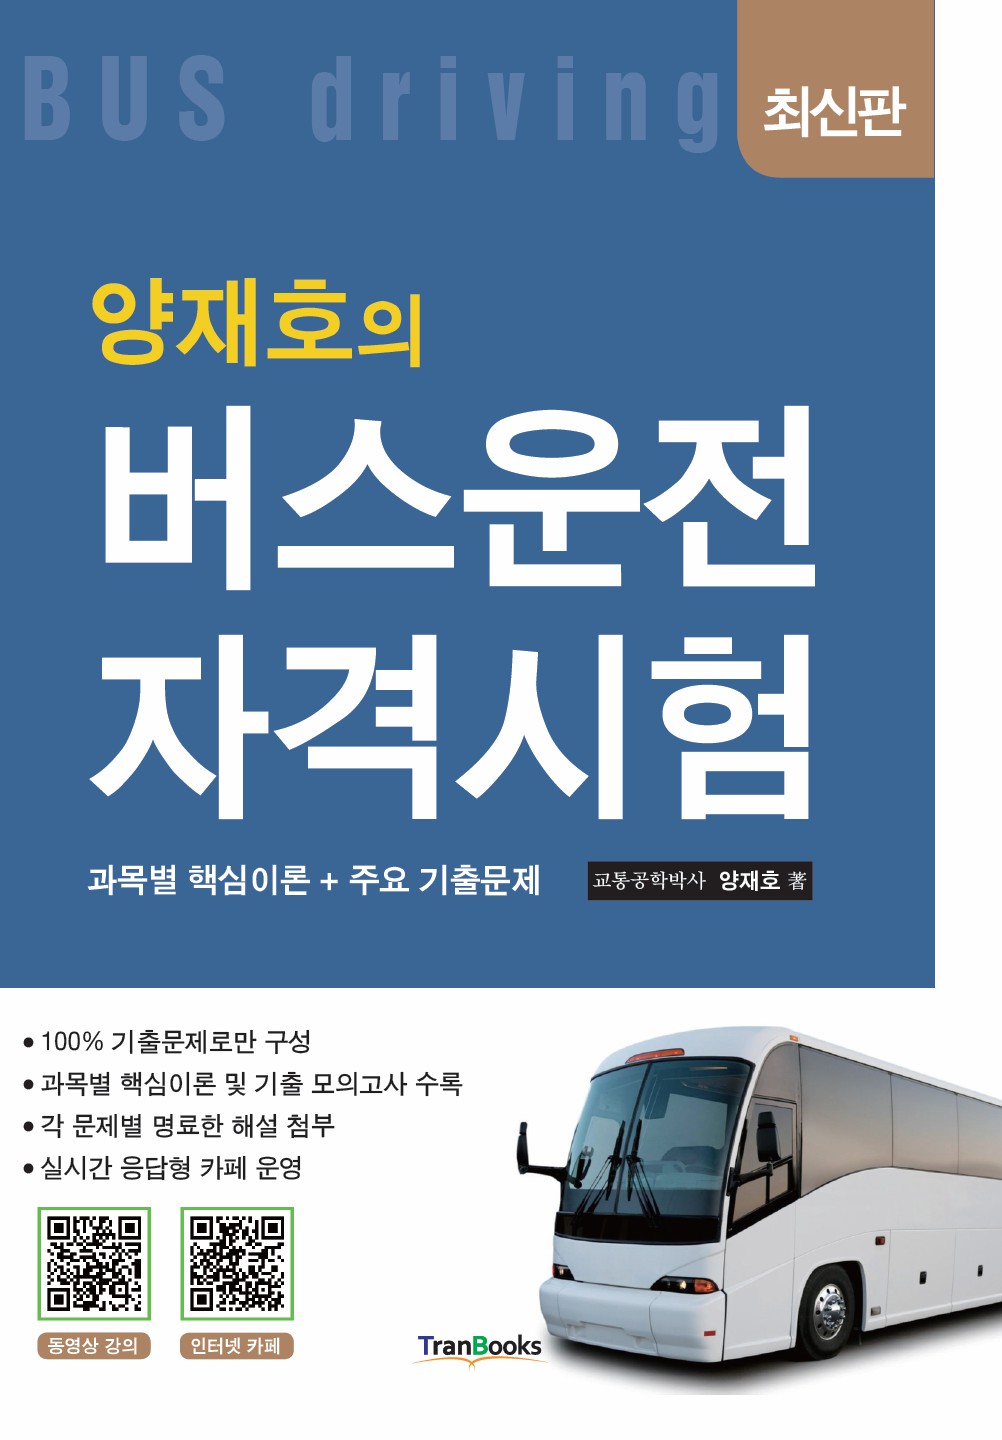 [패키지]버스운전자격시험(10일)